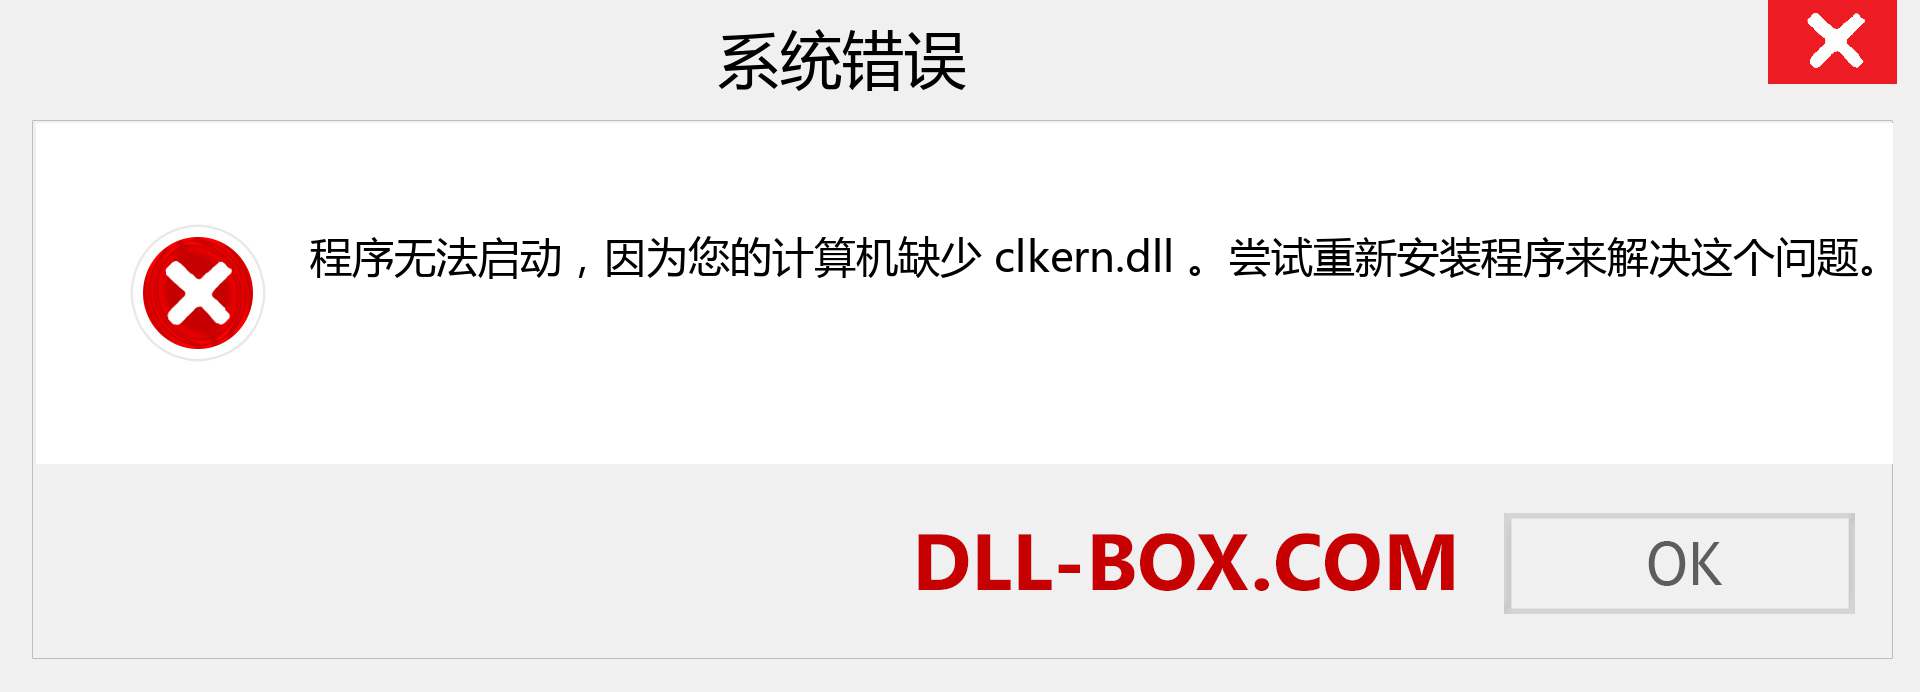 clkern.dll 文件丢失？。 适用于 Windows 7、8、10 的下载 - 修复 Windows、照片、图像上的 clkern dll 丢失错误